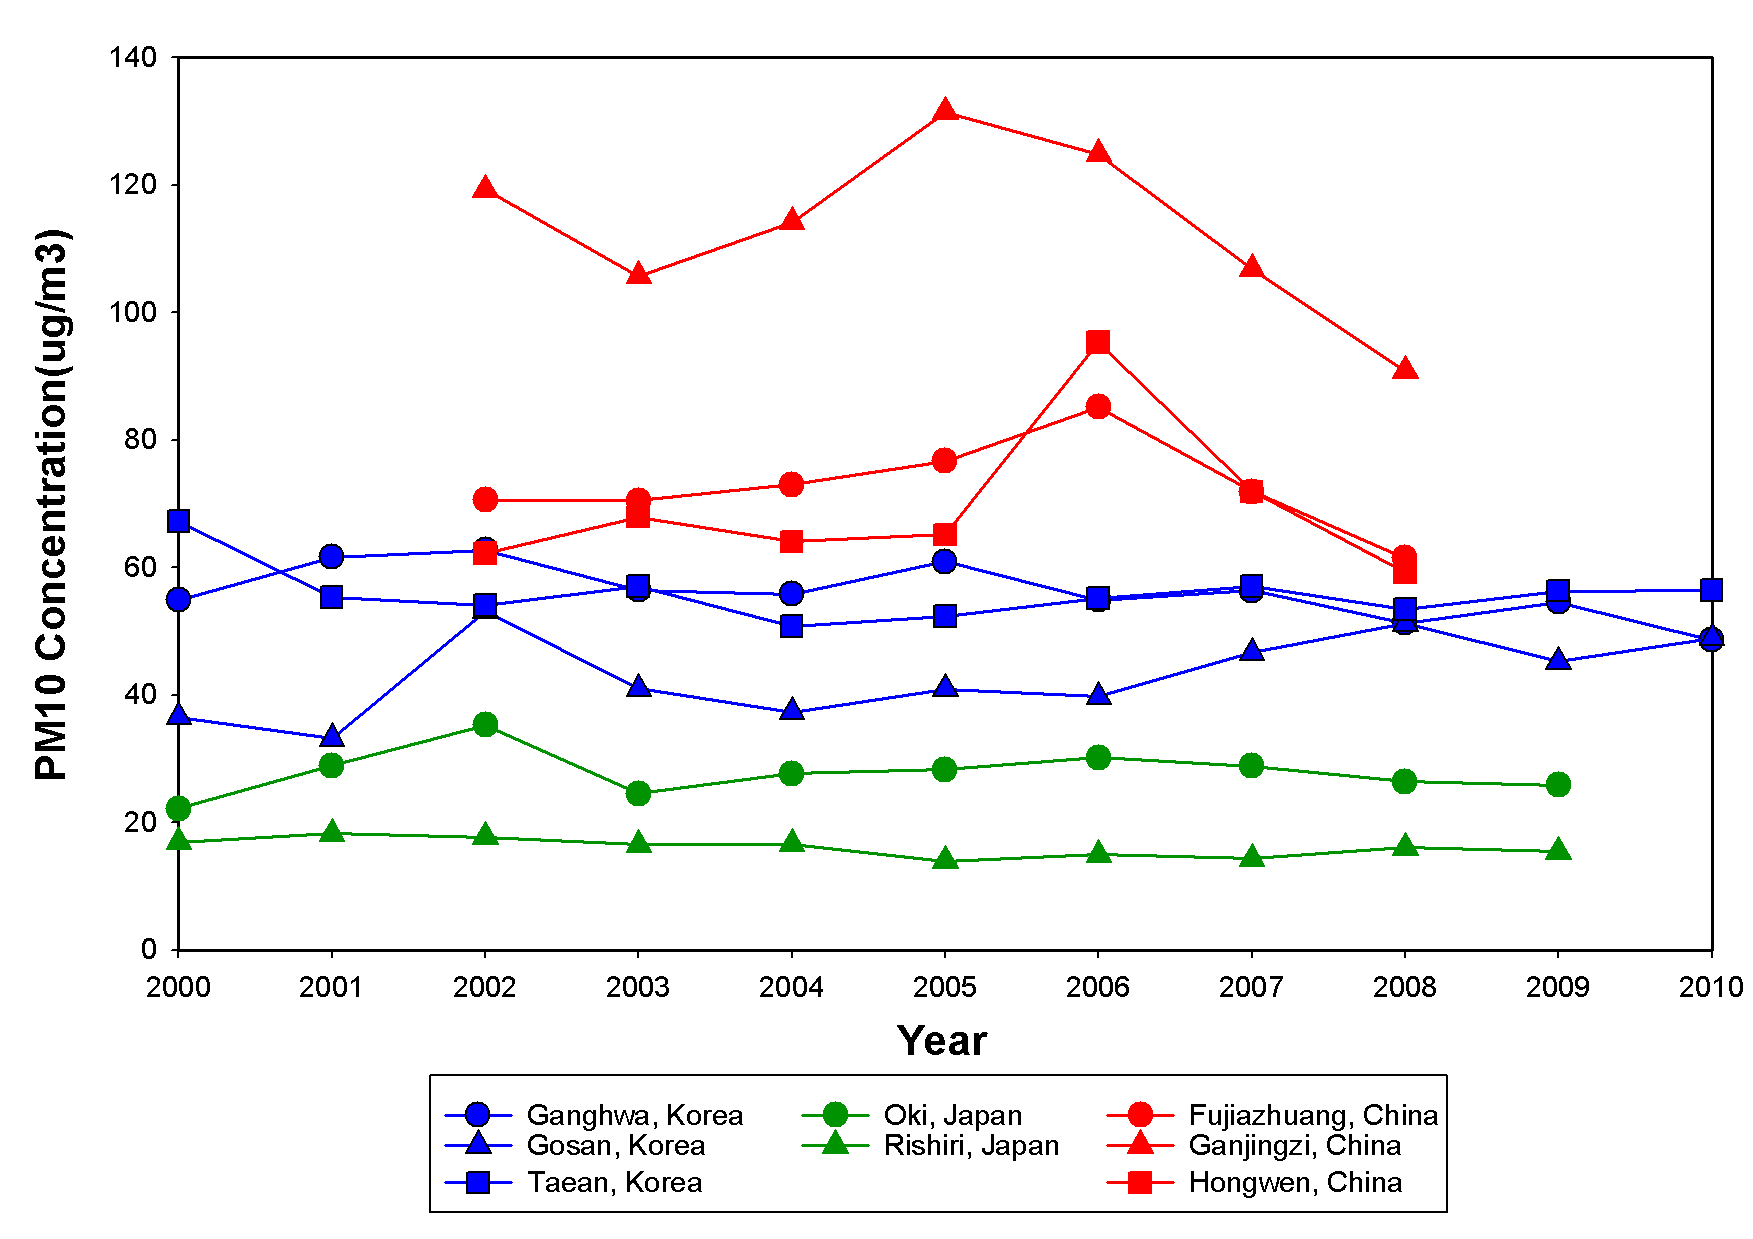 전체 측정 지점에서 2000년부터 2010년까지 PM10 농도의 연평균분포